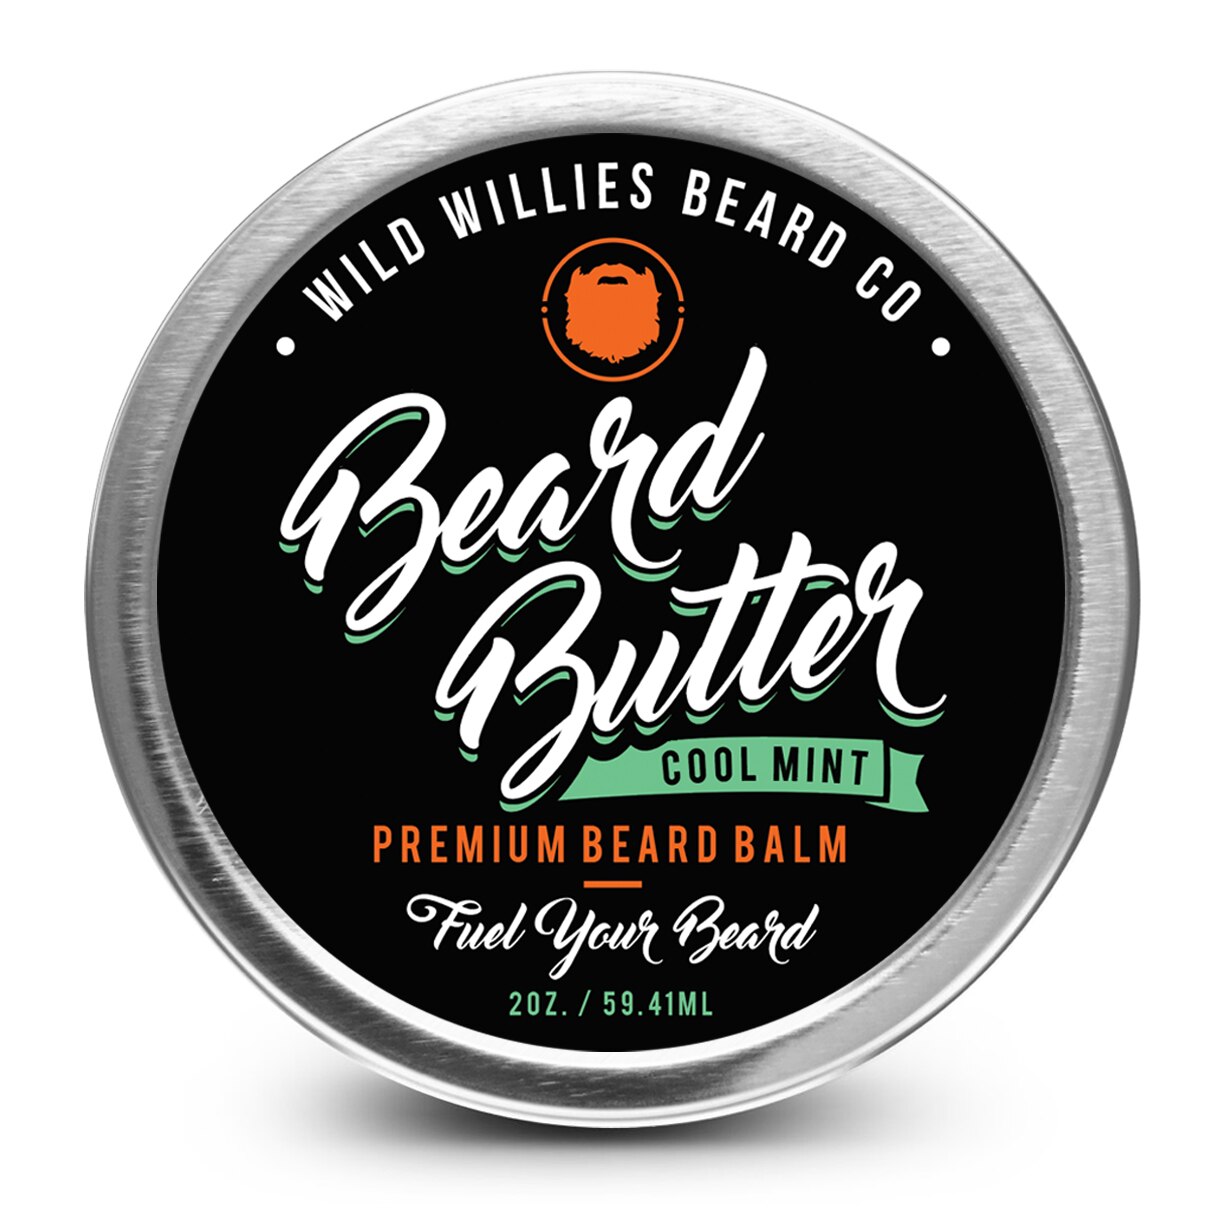 Wild Willies Beard Butter Cool Mint, 2 OZ